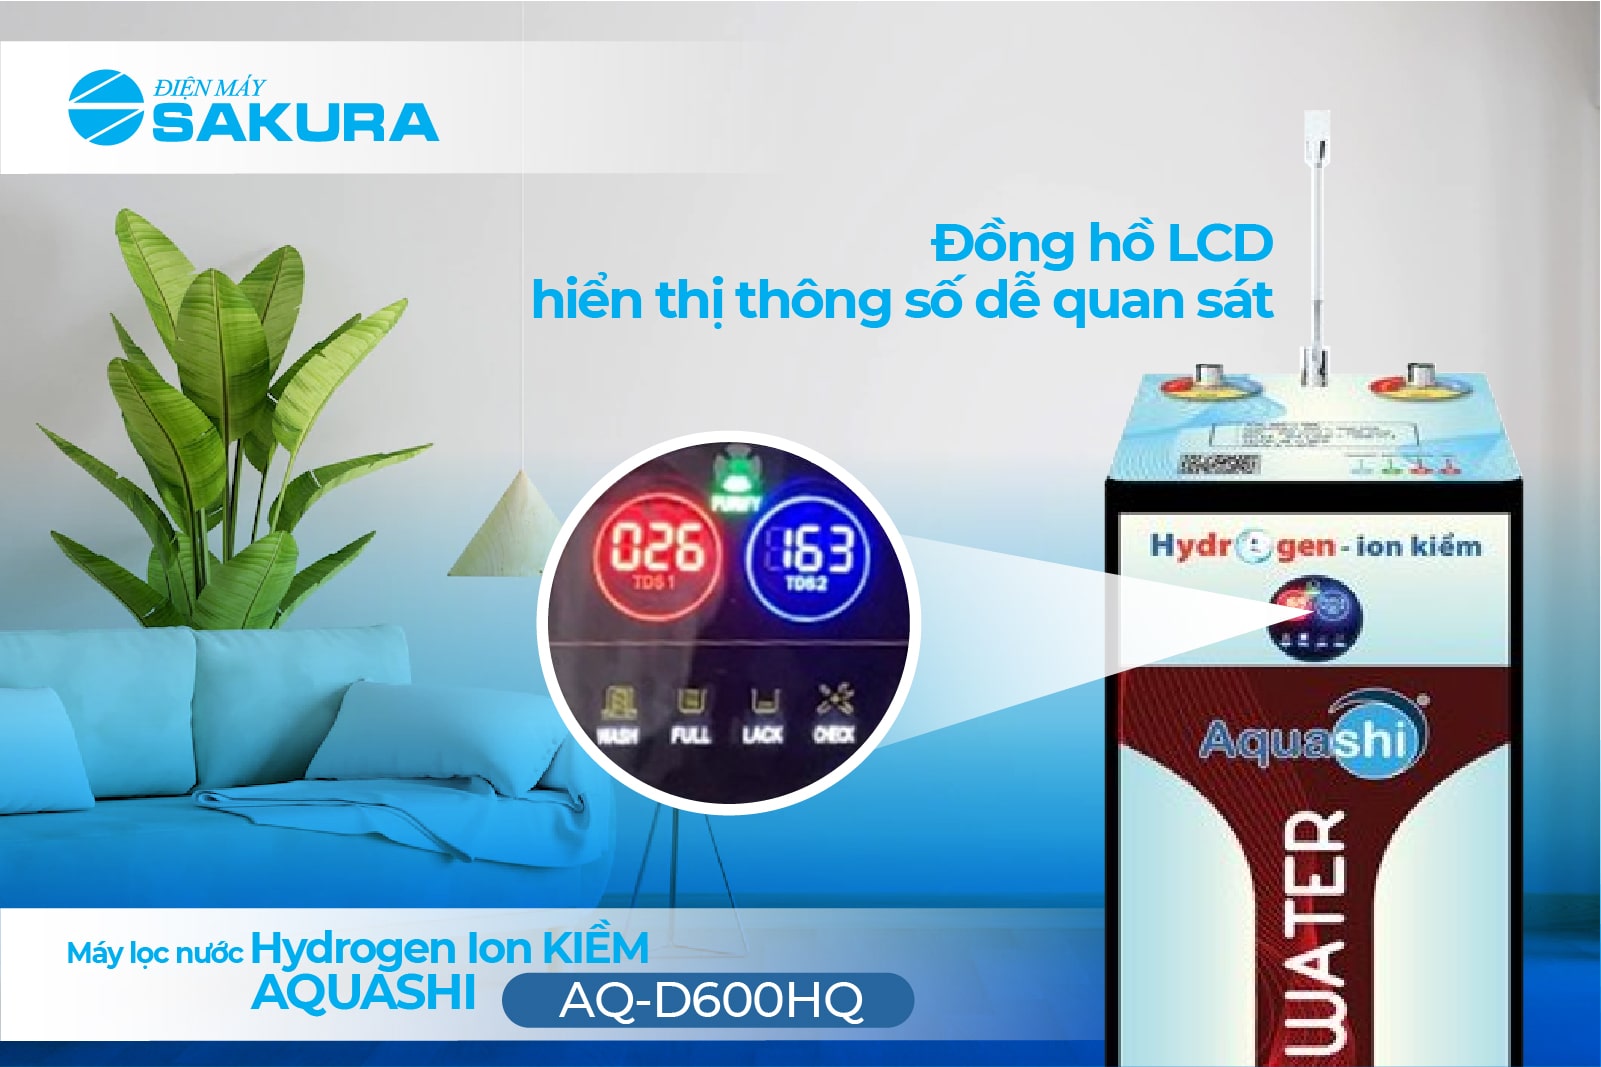 Máy lọc nước Aquashi AQ-D600HQ đồng hồ LCD hiển thị thông số 